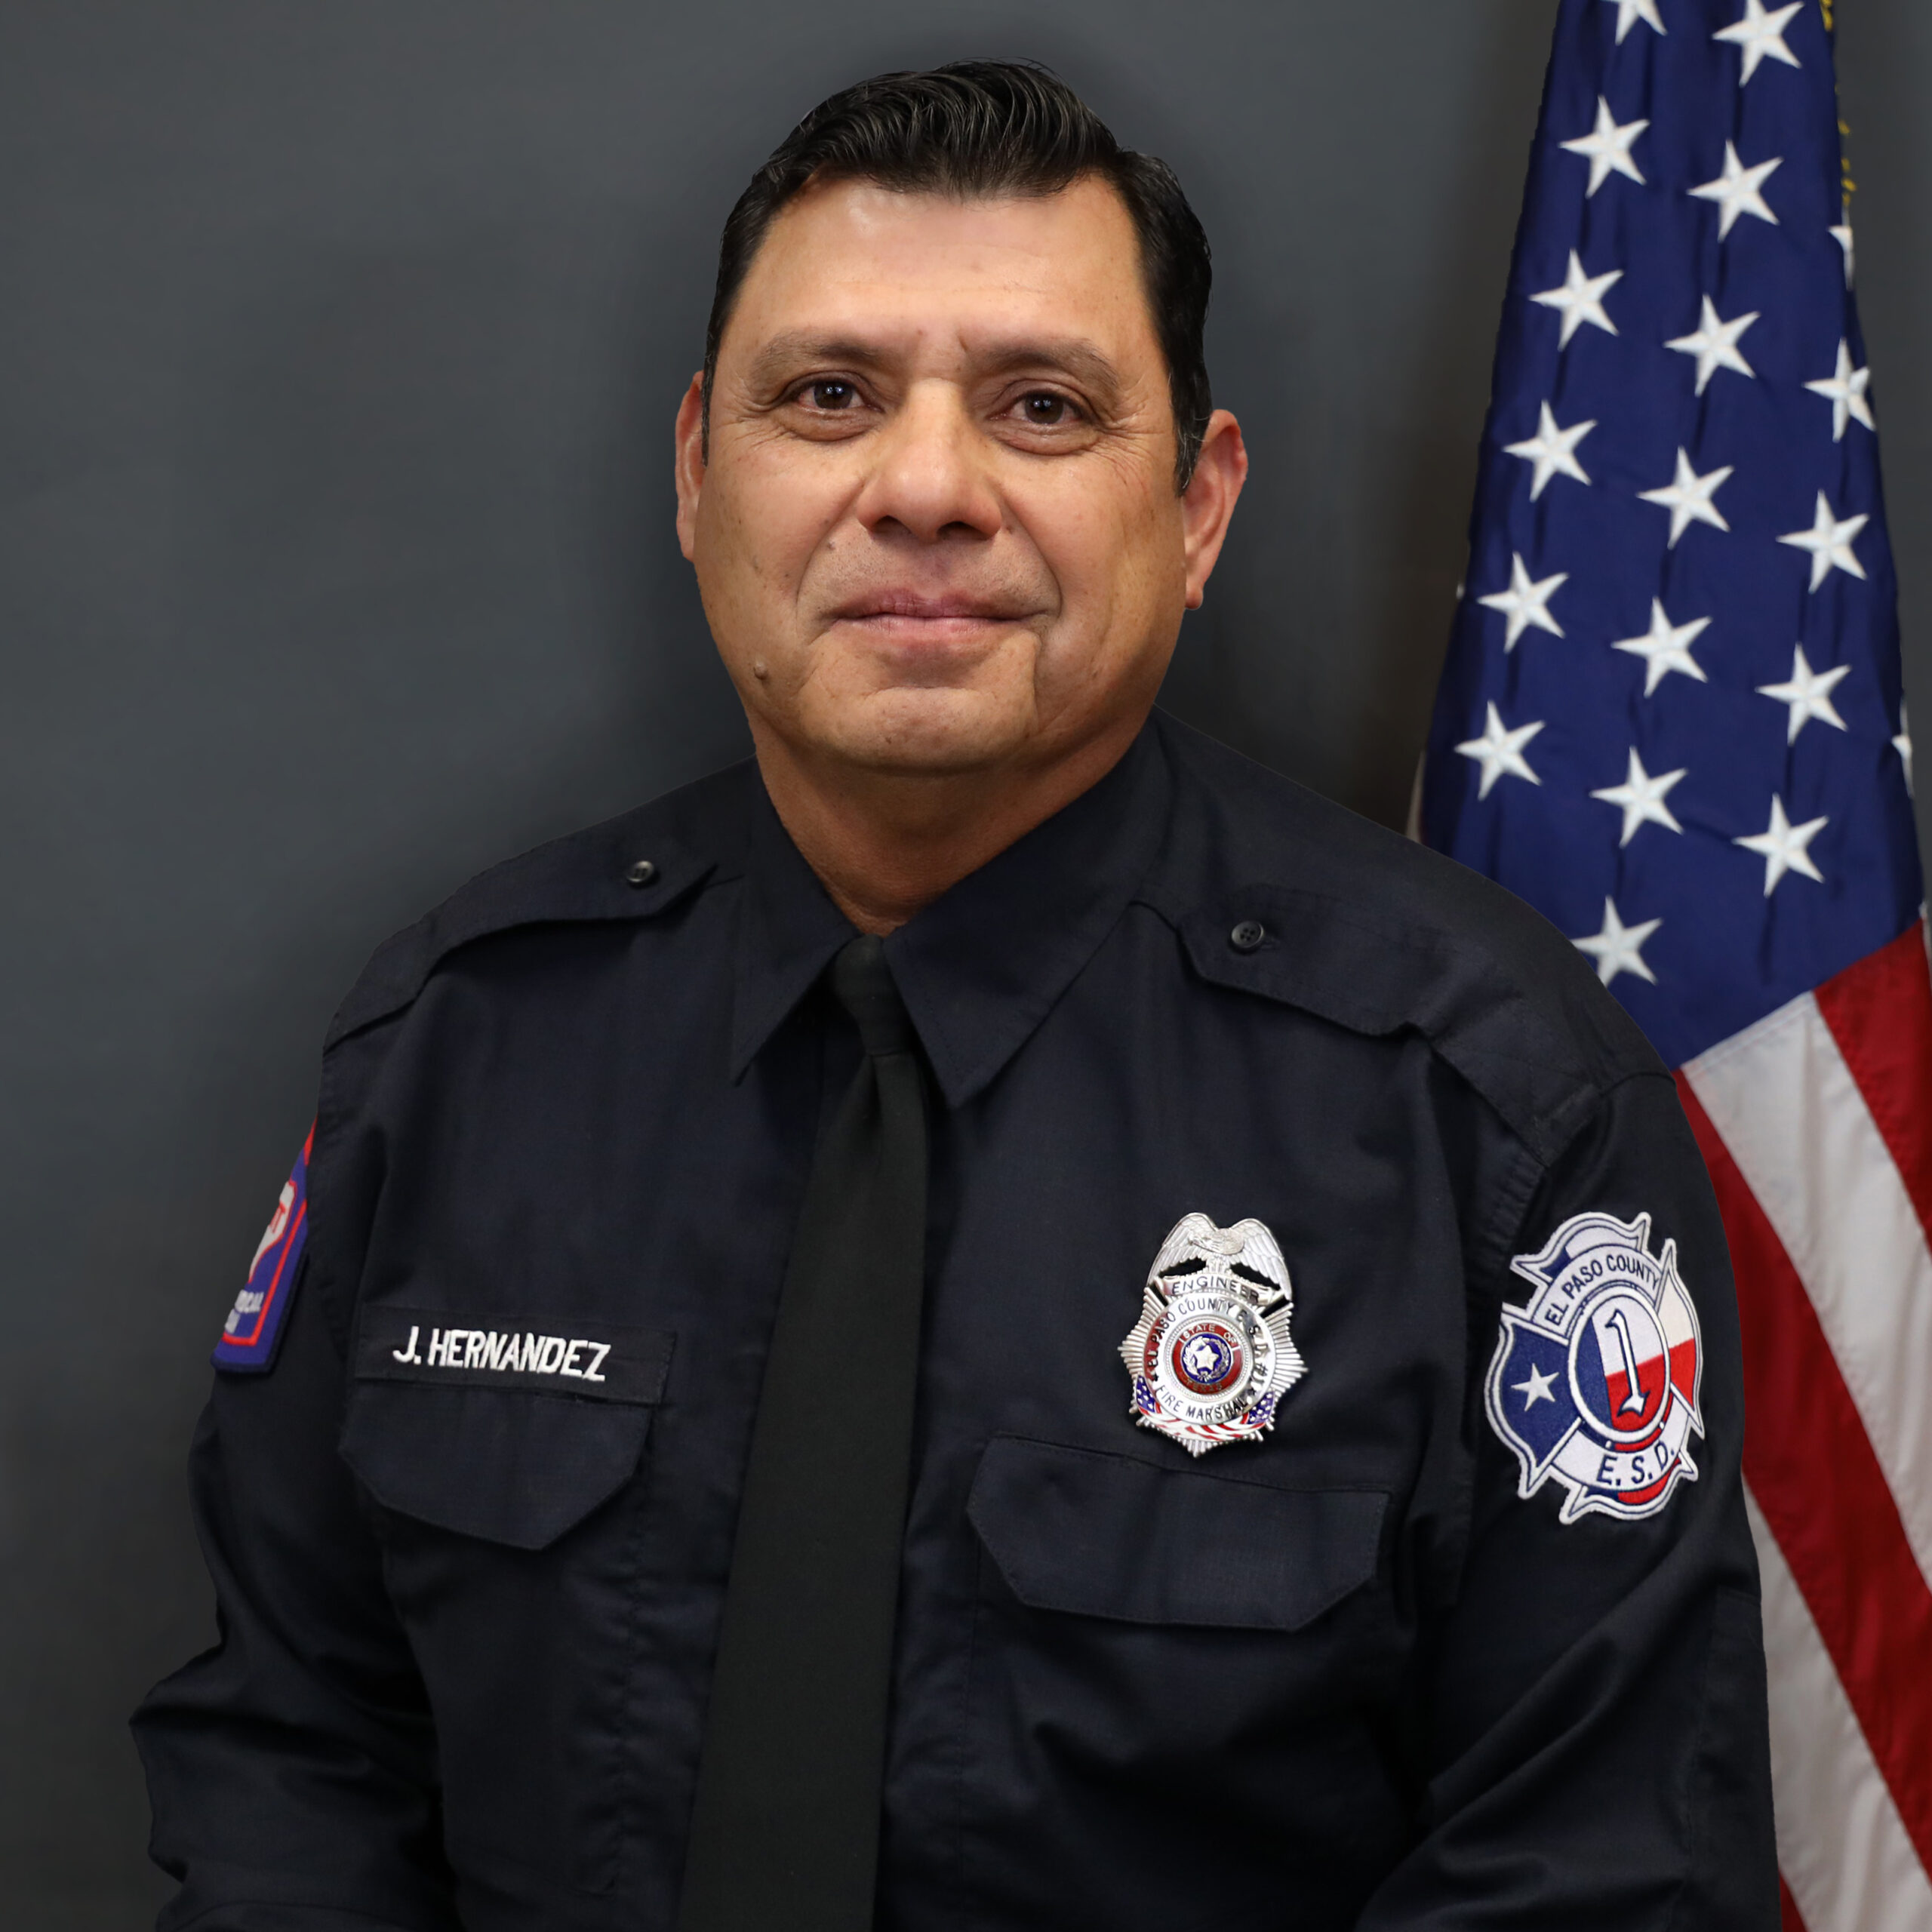 Joe Hernandez - Deputy Fire Marshal